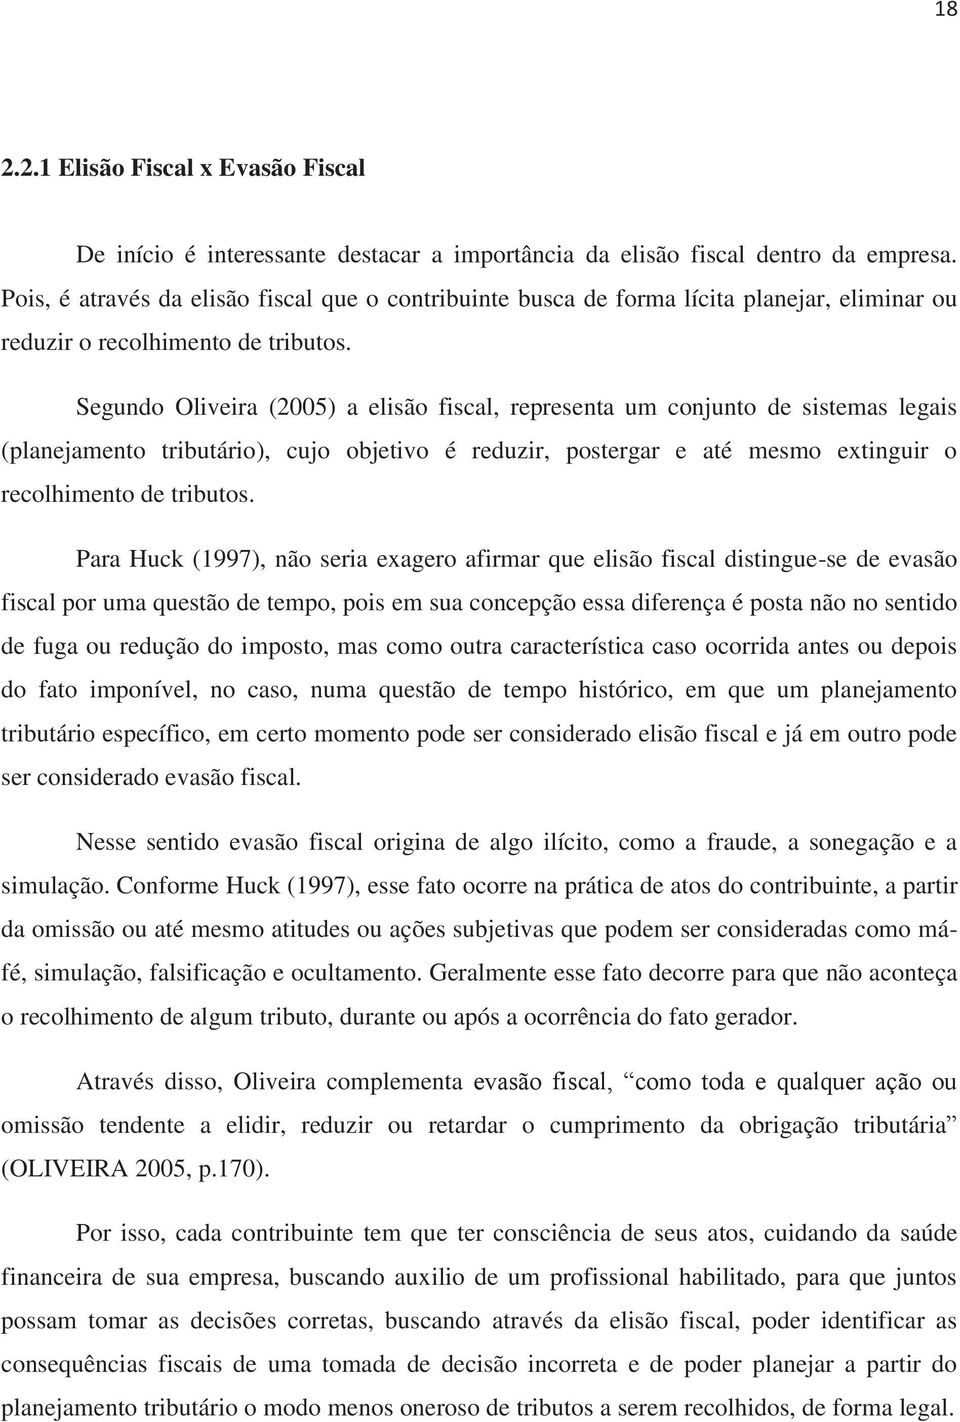 Segundo Oliveira (2005) a elisão fiscal, representa um conjunto de sistemas legais (planejamento tributário), cujo objetivo é reduzir, postergar e até mesmo extinguir o recolhimento de tributos.